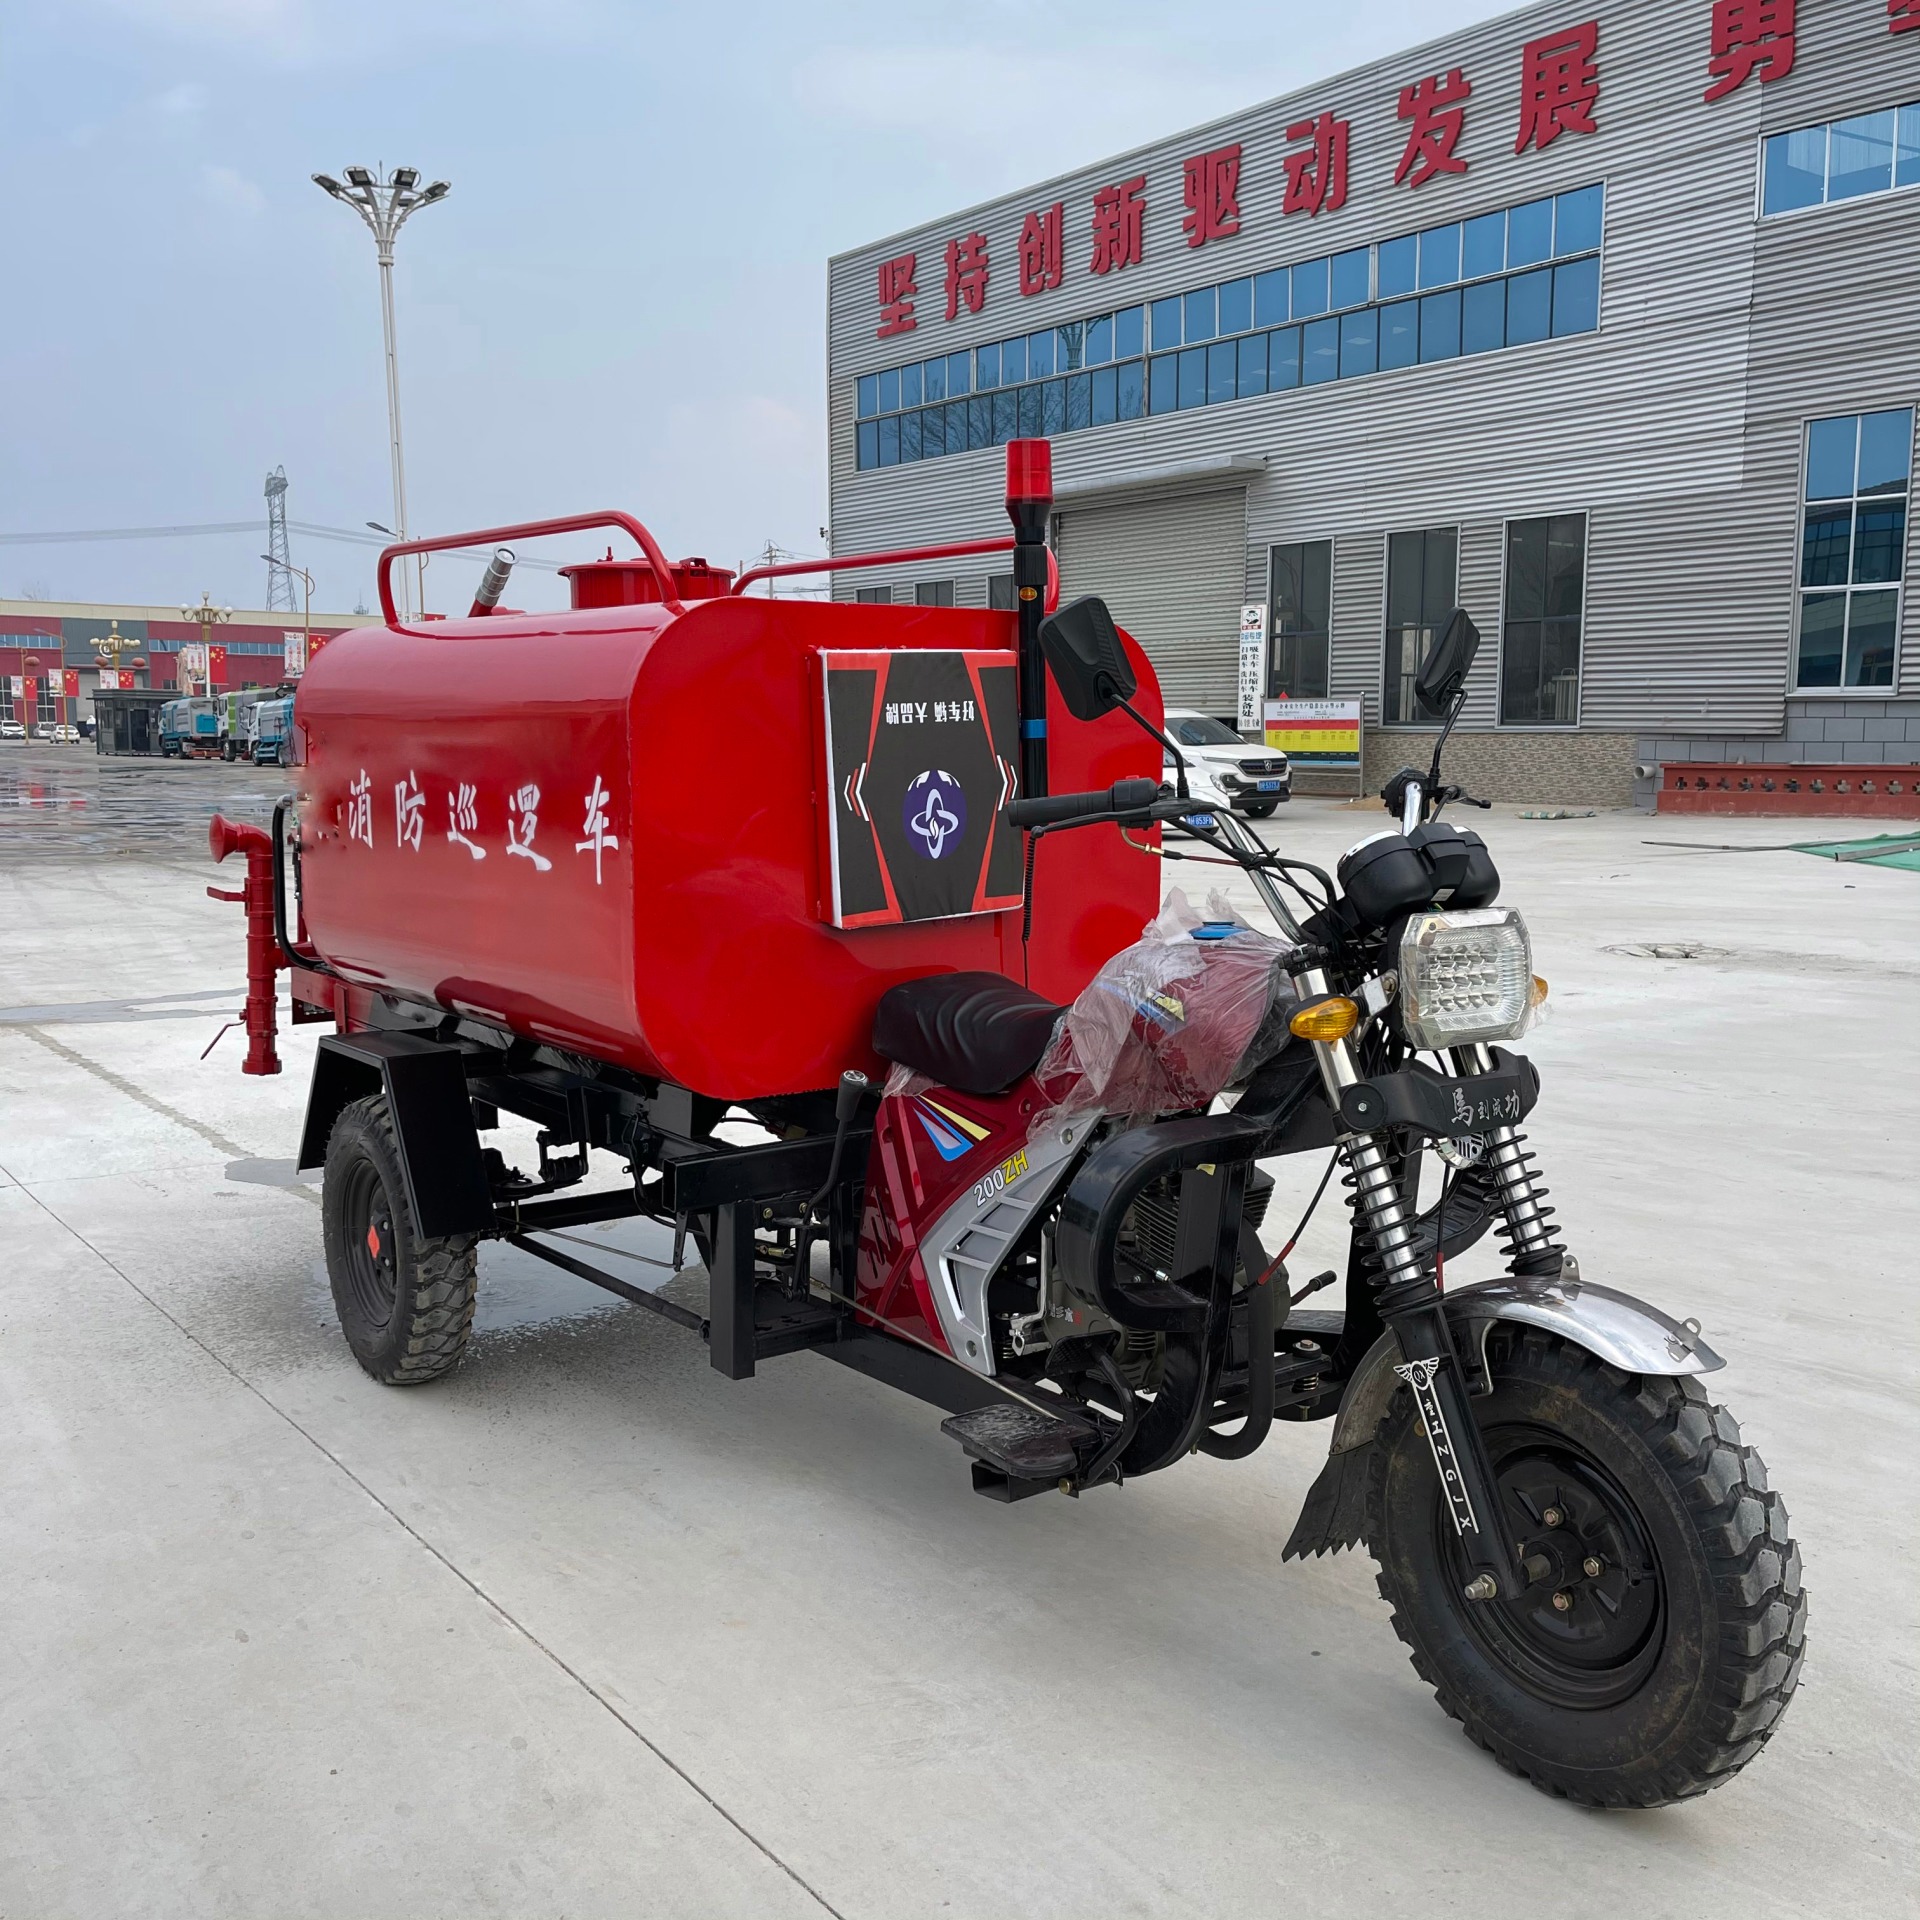 摩托消防车 机动三轮消防车 小型水罐消防车 中运威生产厂家